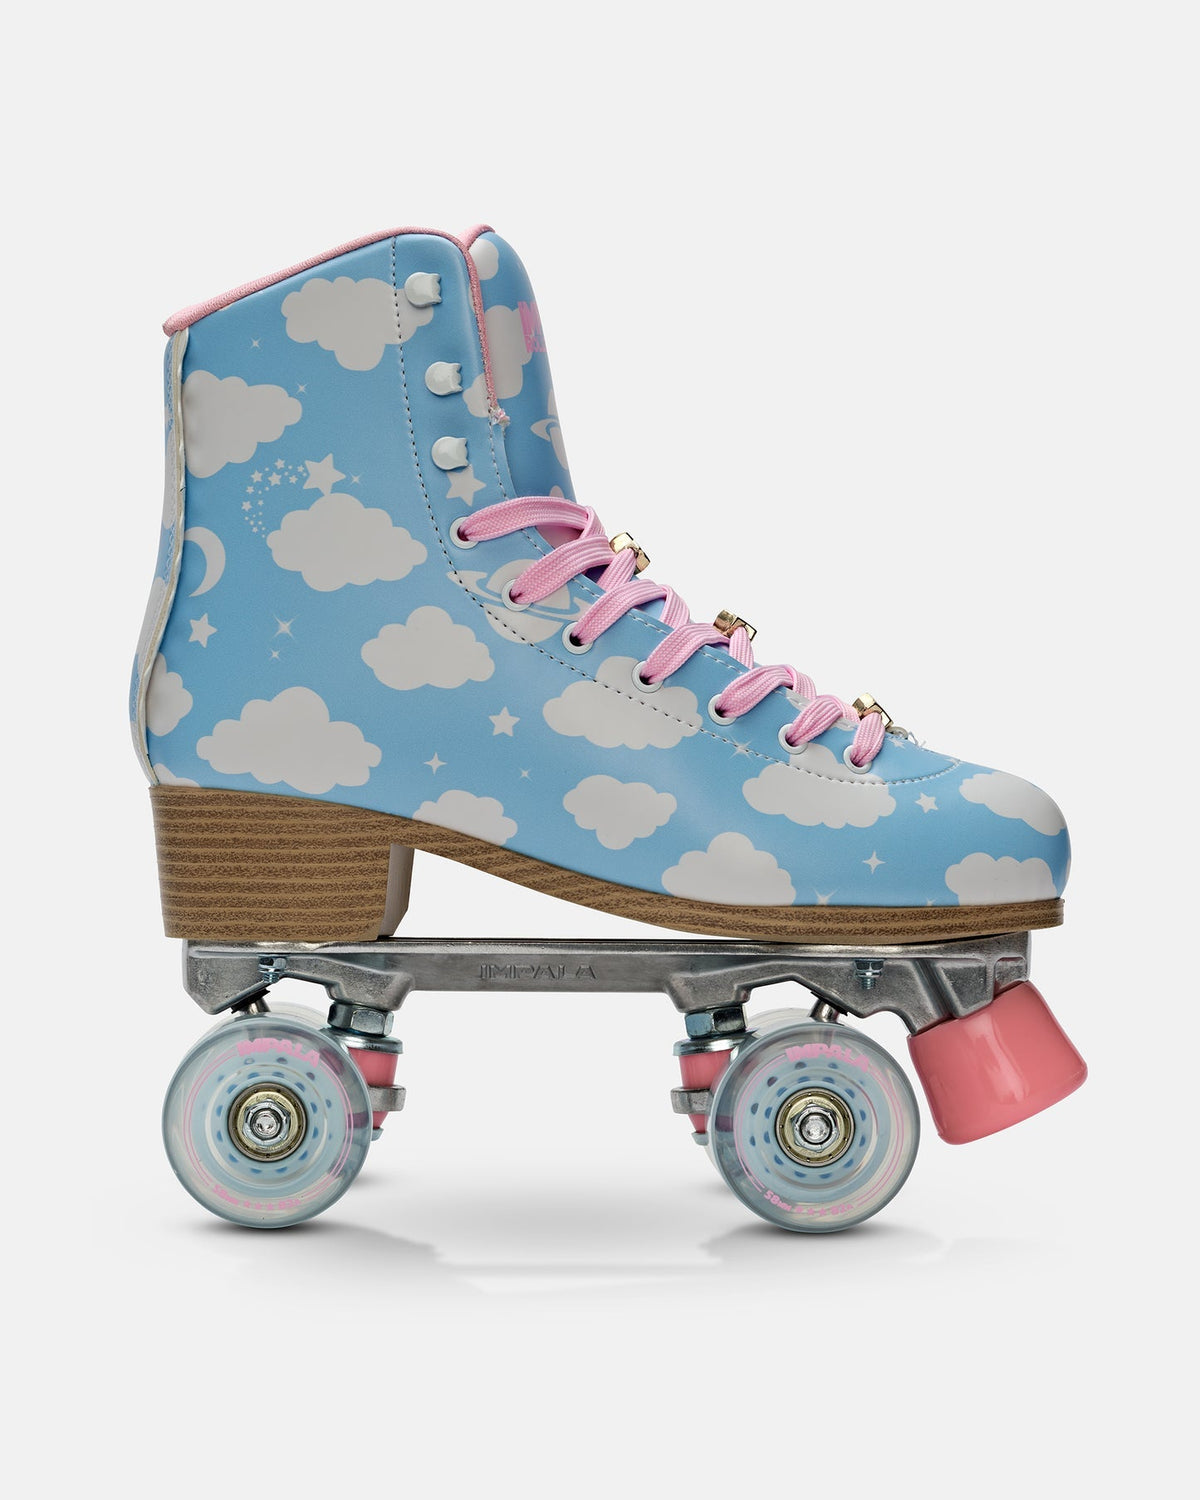 IMPALA Starbright Roller Skates